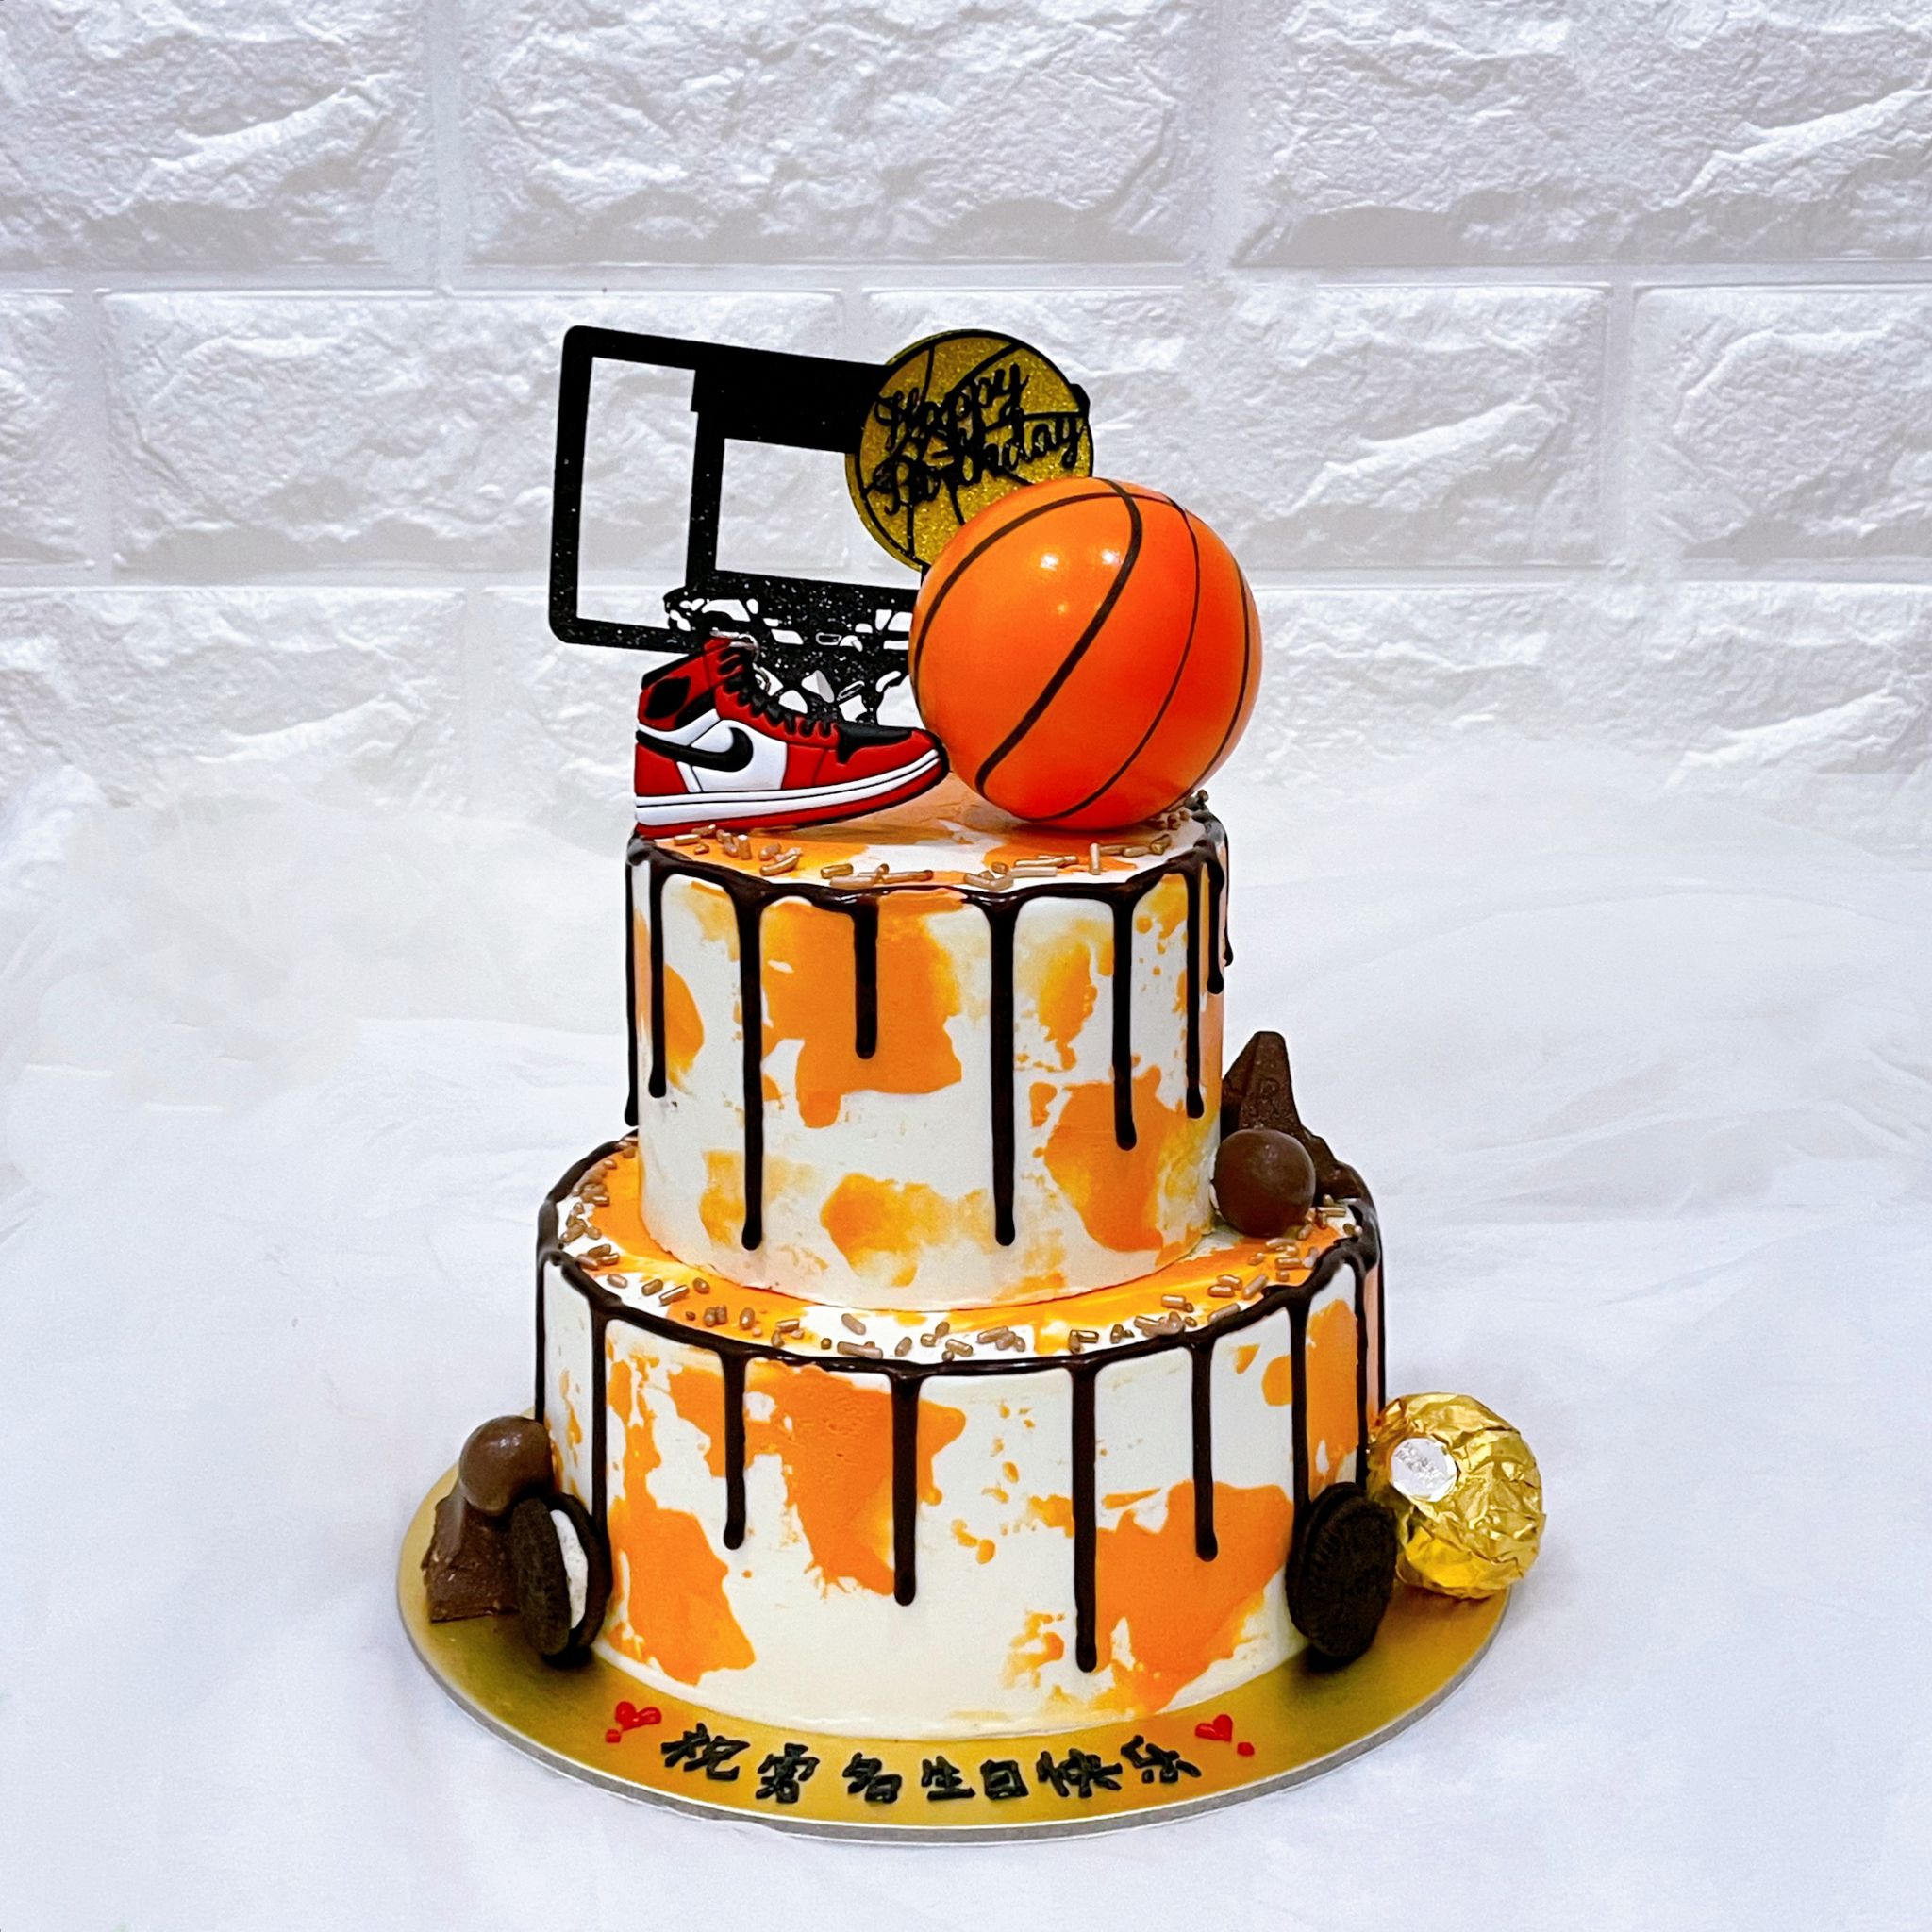 Basketball cake 4